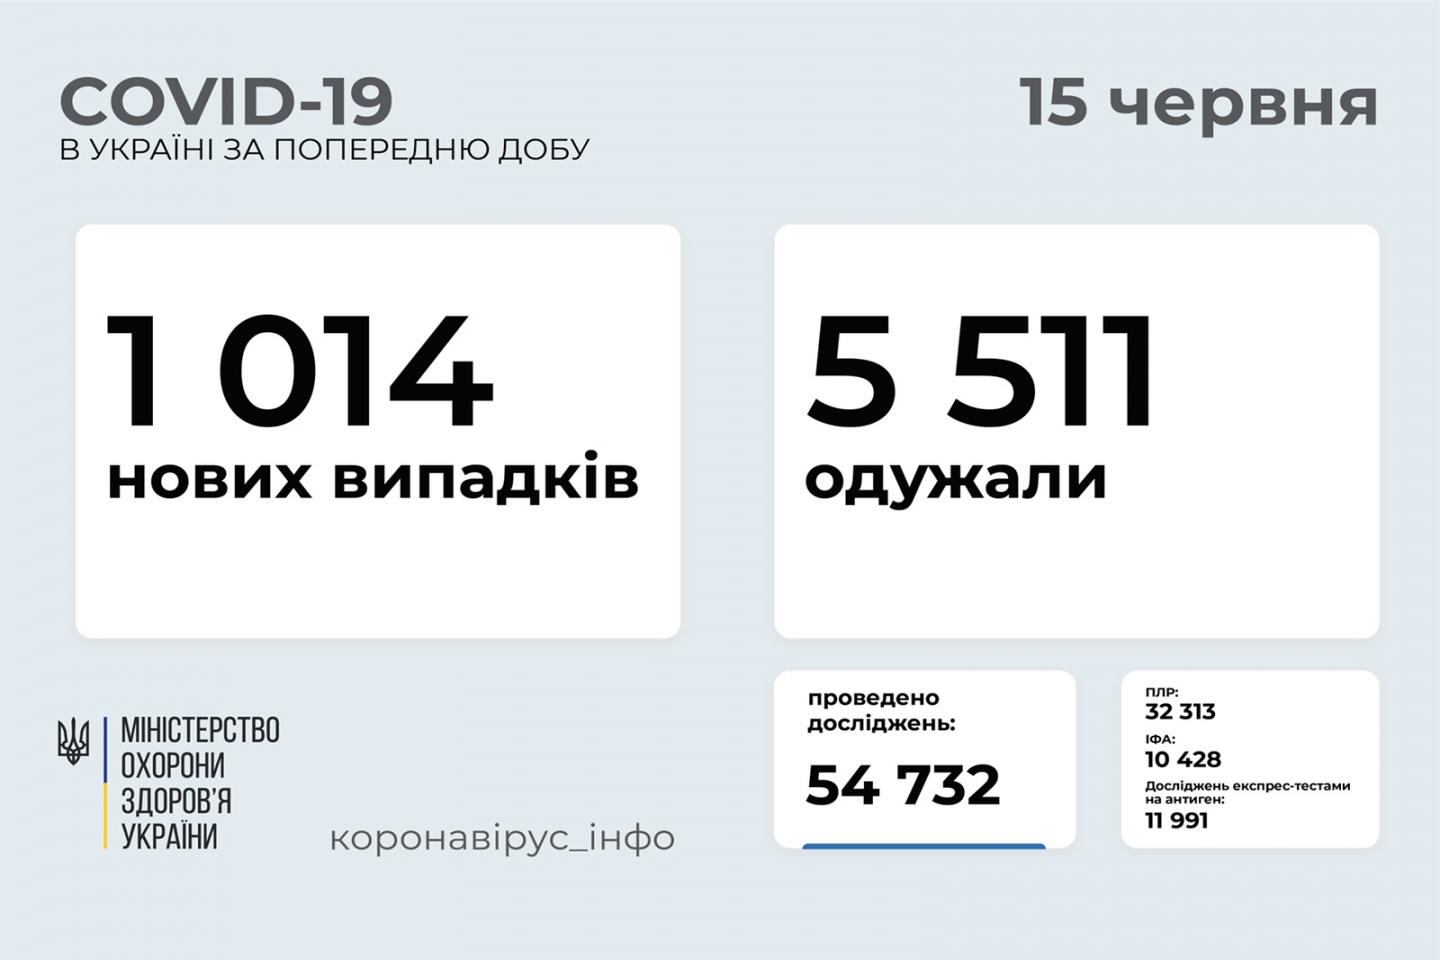 http://dunrada.gov.ua/uploadfile/archive_news/2021/06/15/2021-06-15_4119/images/images-18226.jpg